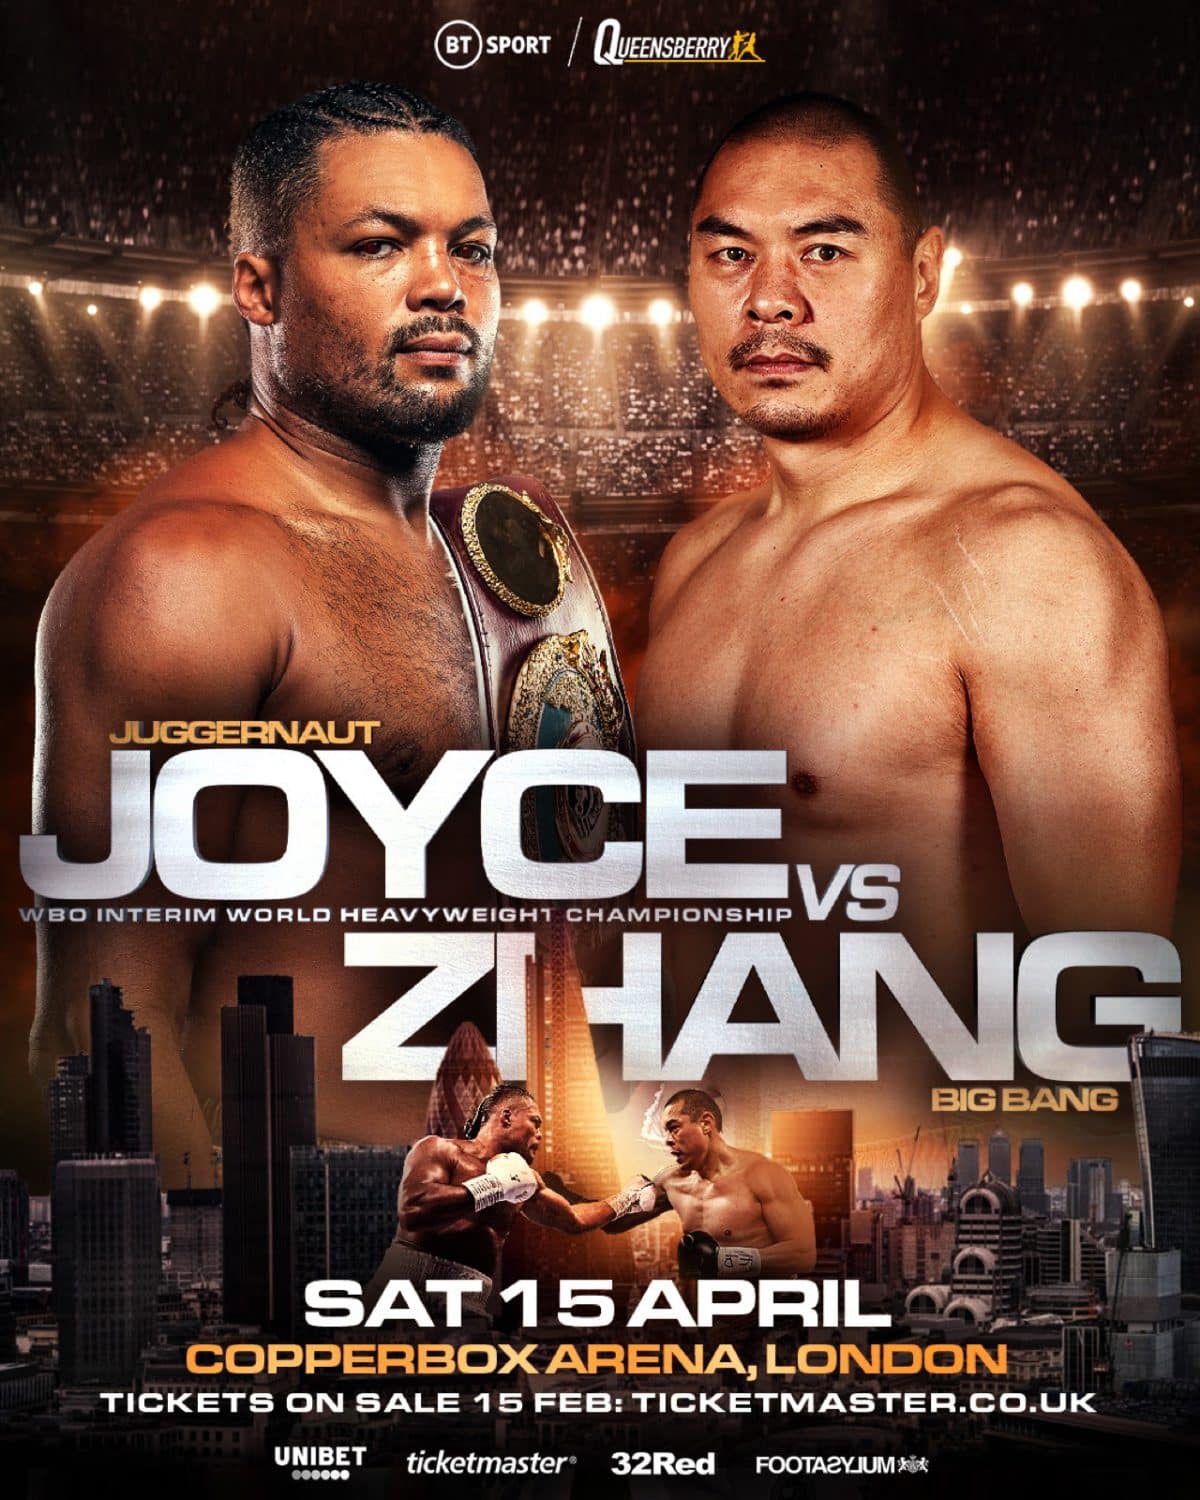 Image: Joe Joyce battles Zhilei Zhang on April 15th in London on BT Sport